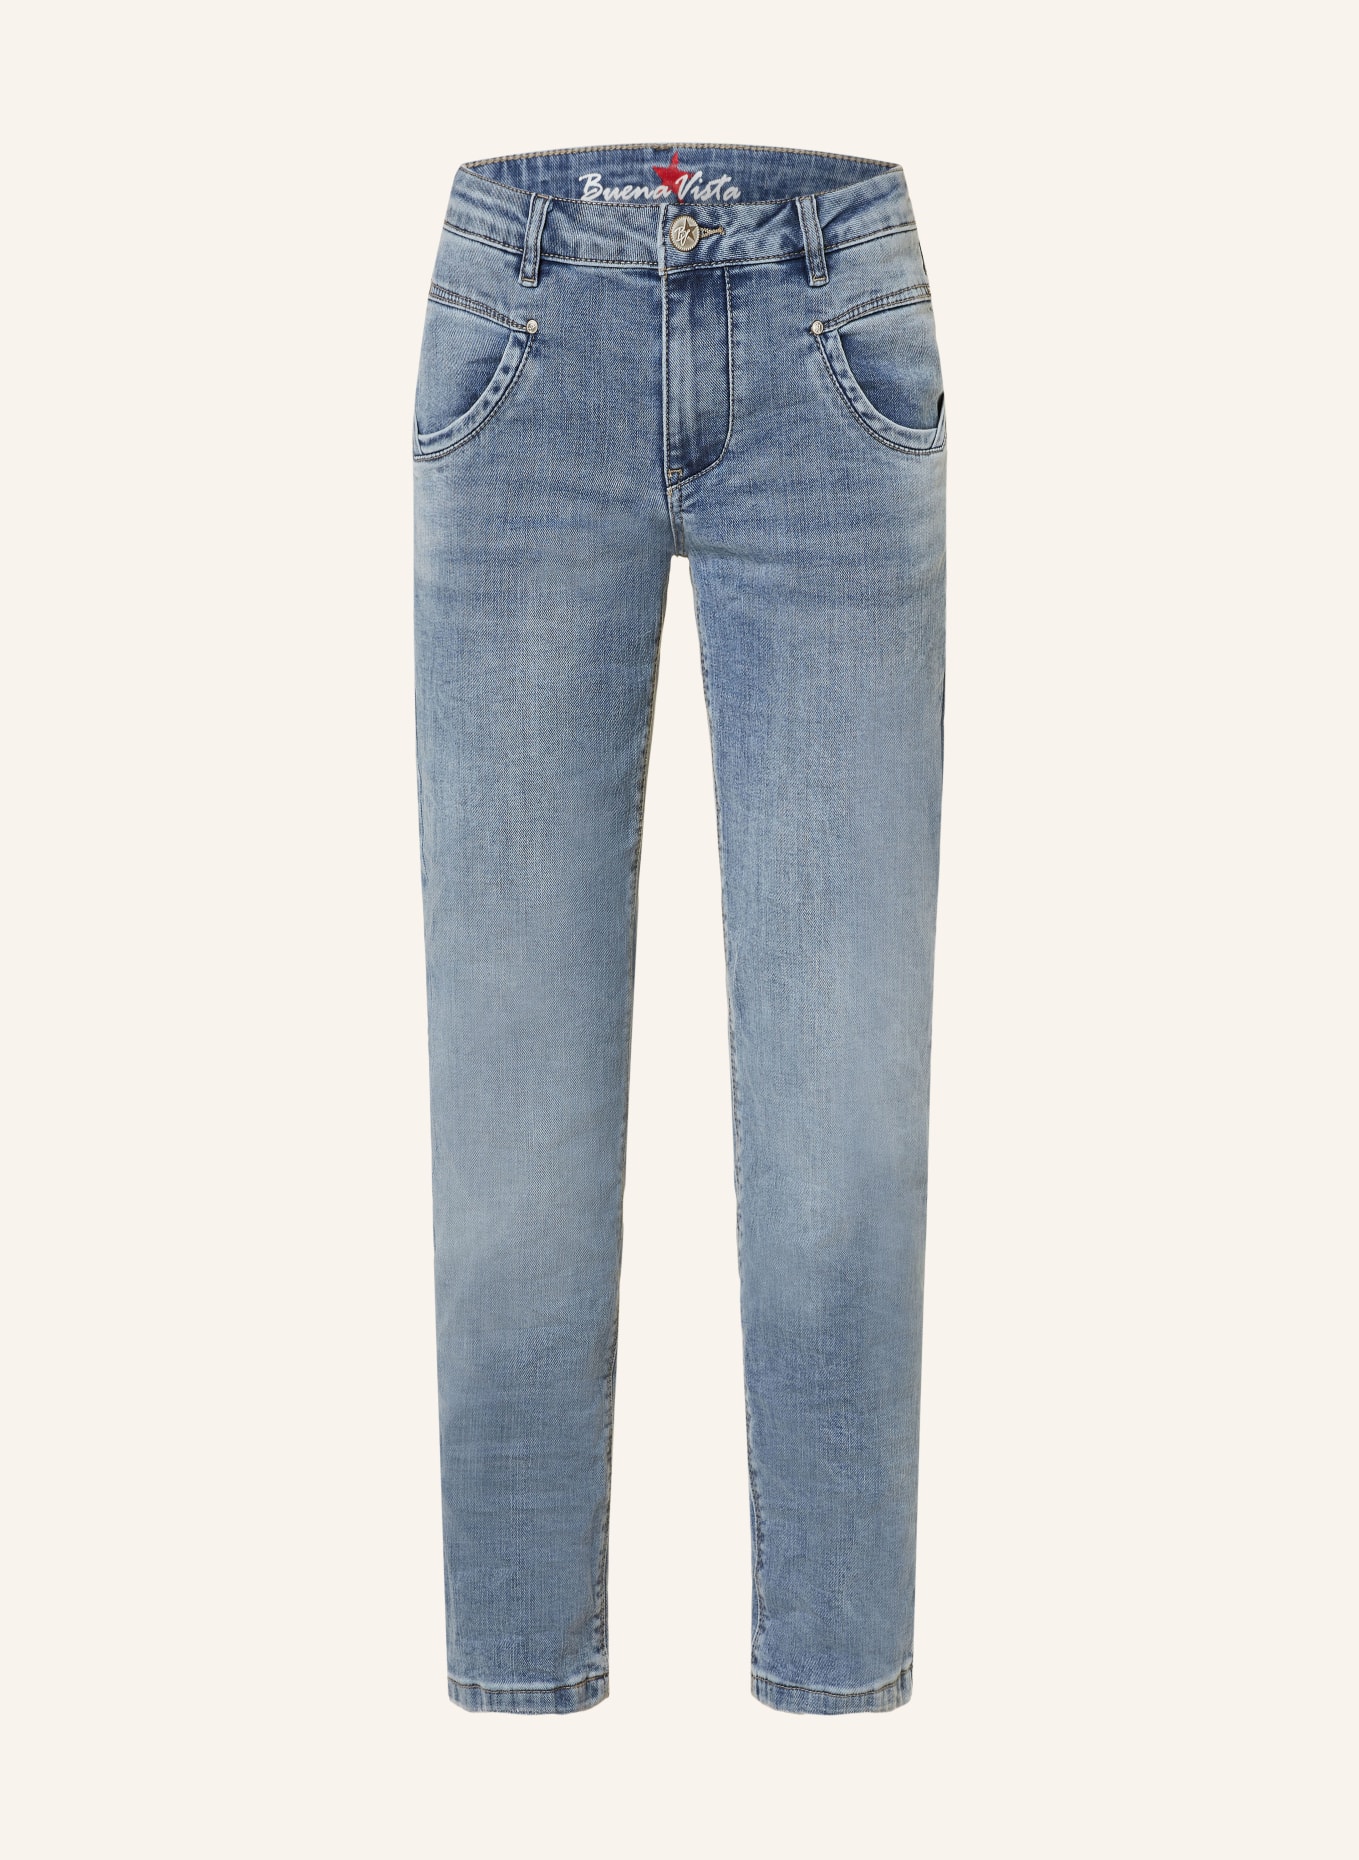 Buena Vista Straight Jeans ANNA, Farbe: 2163 mid stone (Bild 1)